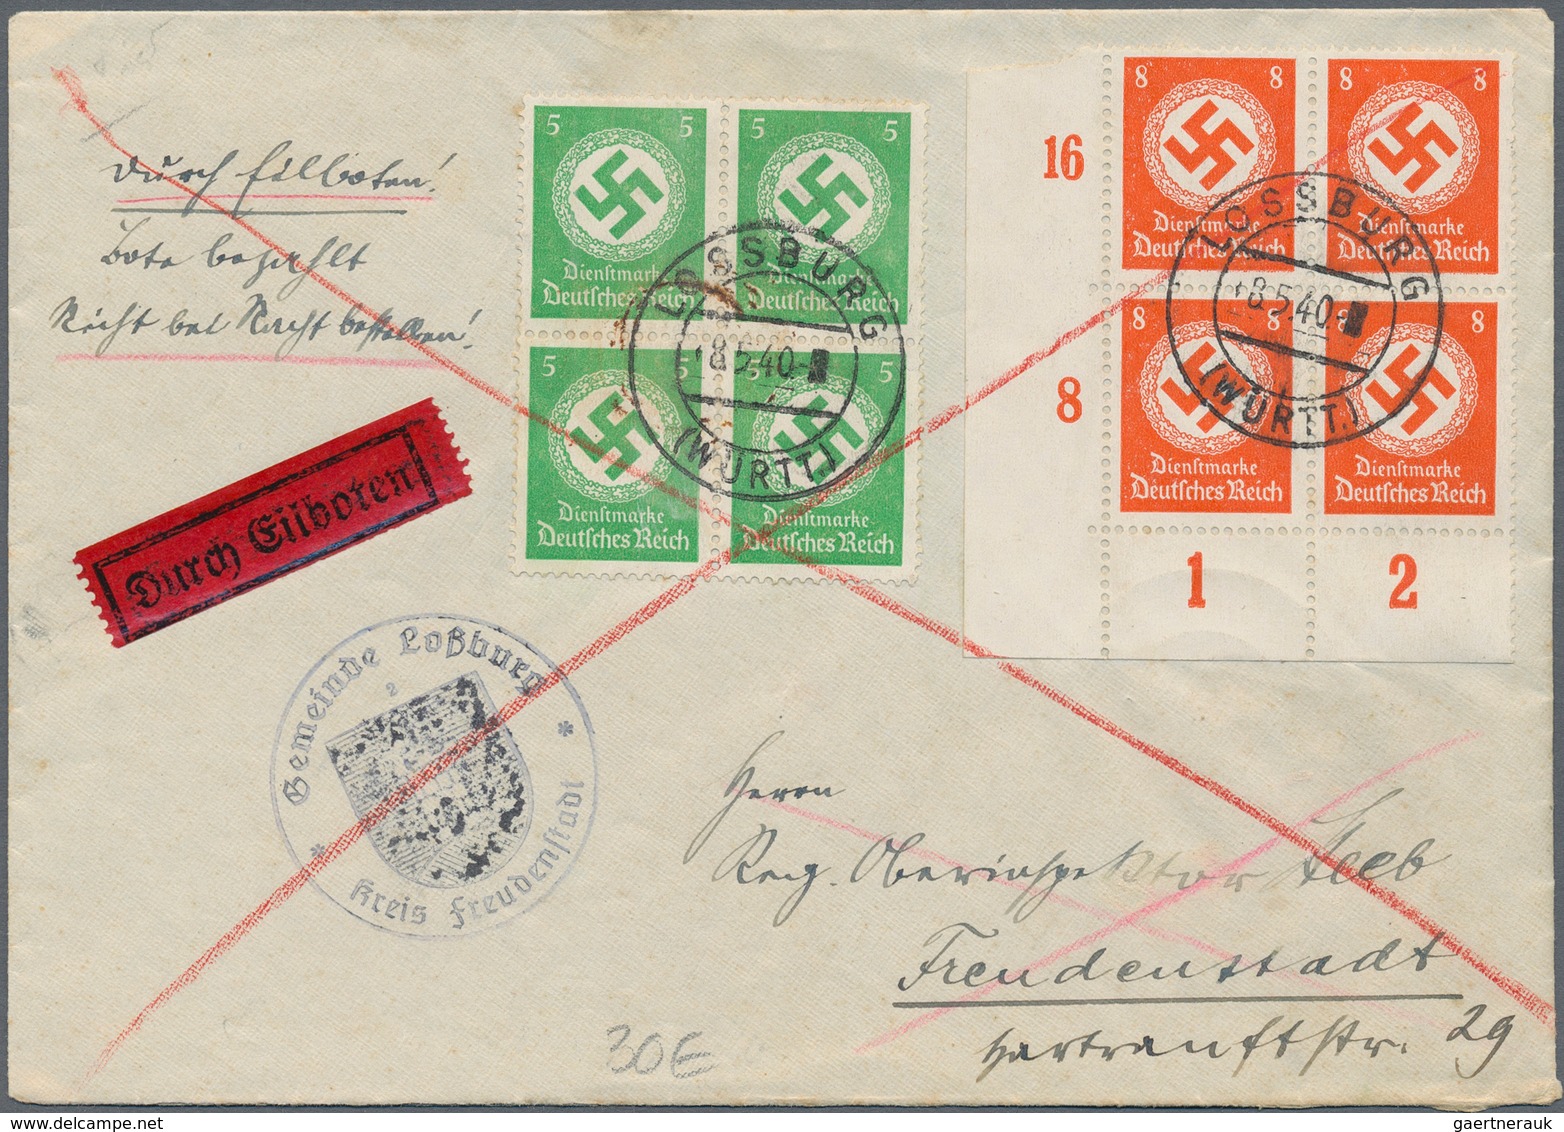 Deutsches Reich: 1872-1945, vielseitiger Bestand mit rund 2.000 Briefen und Belegen, dabei auch Eins